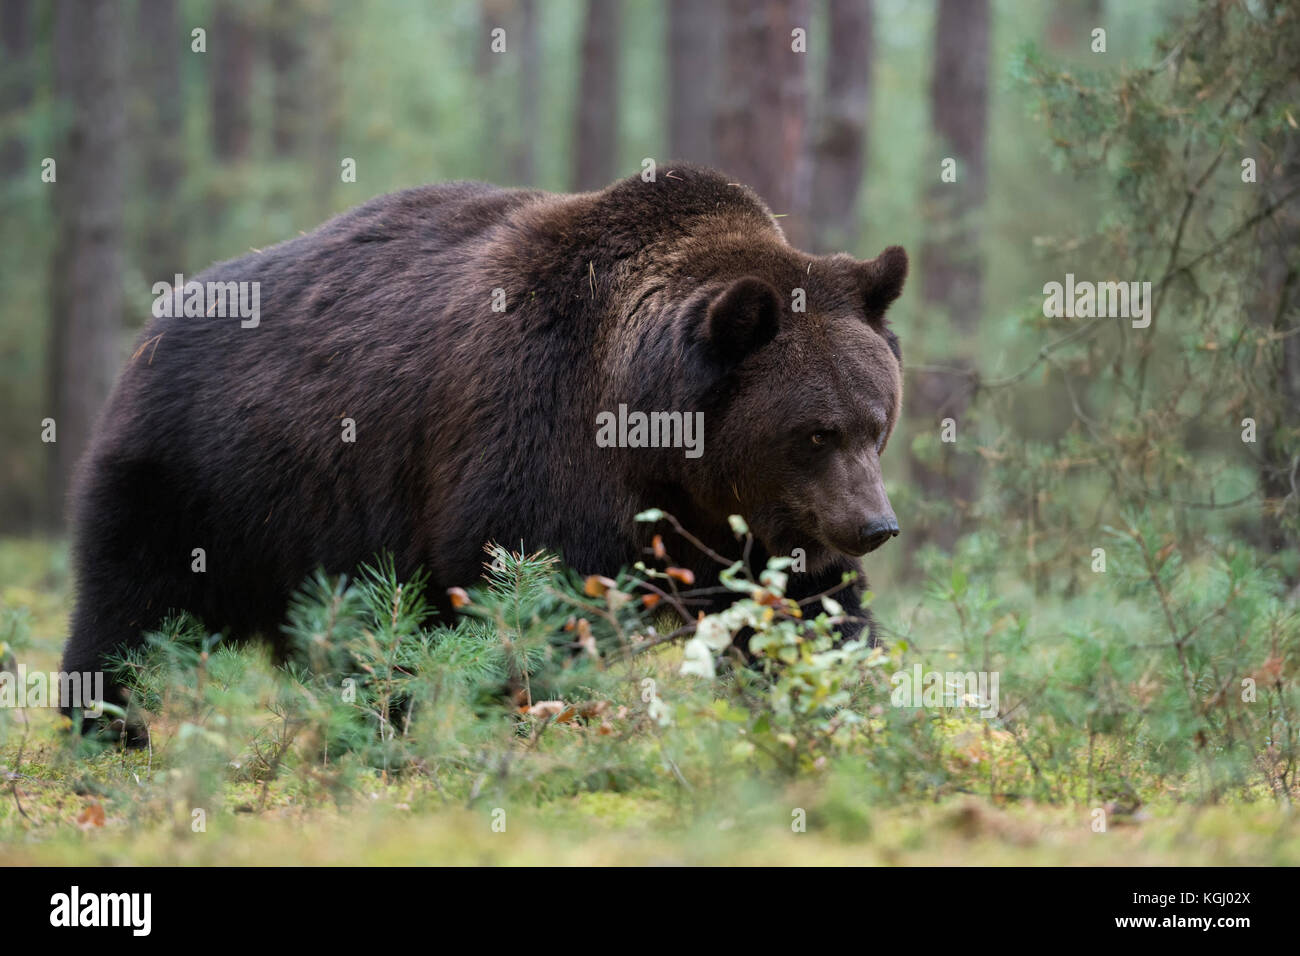 Ours brun eurasien / Braunbaer ( Ursus arctos ), fort et puissant, marchant dans la sous-croissance d'une forêt boréale, Europe. Banque D'Images